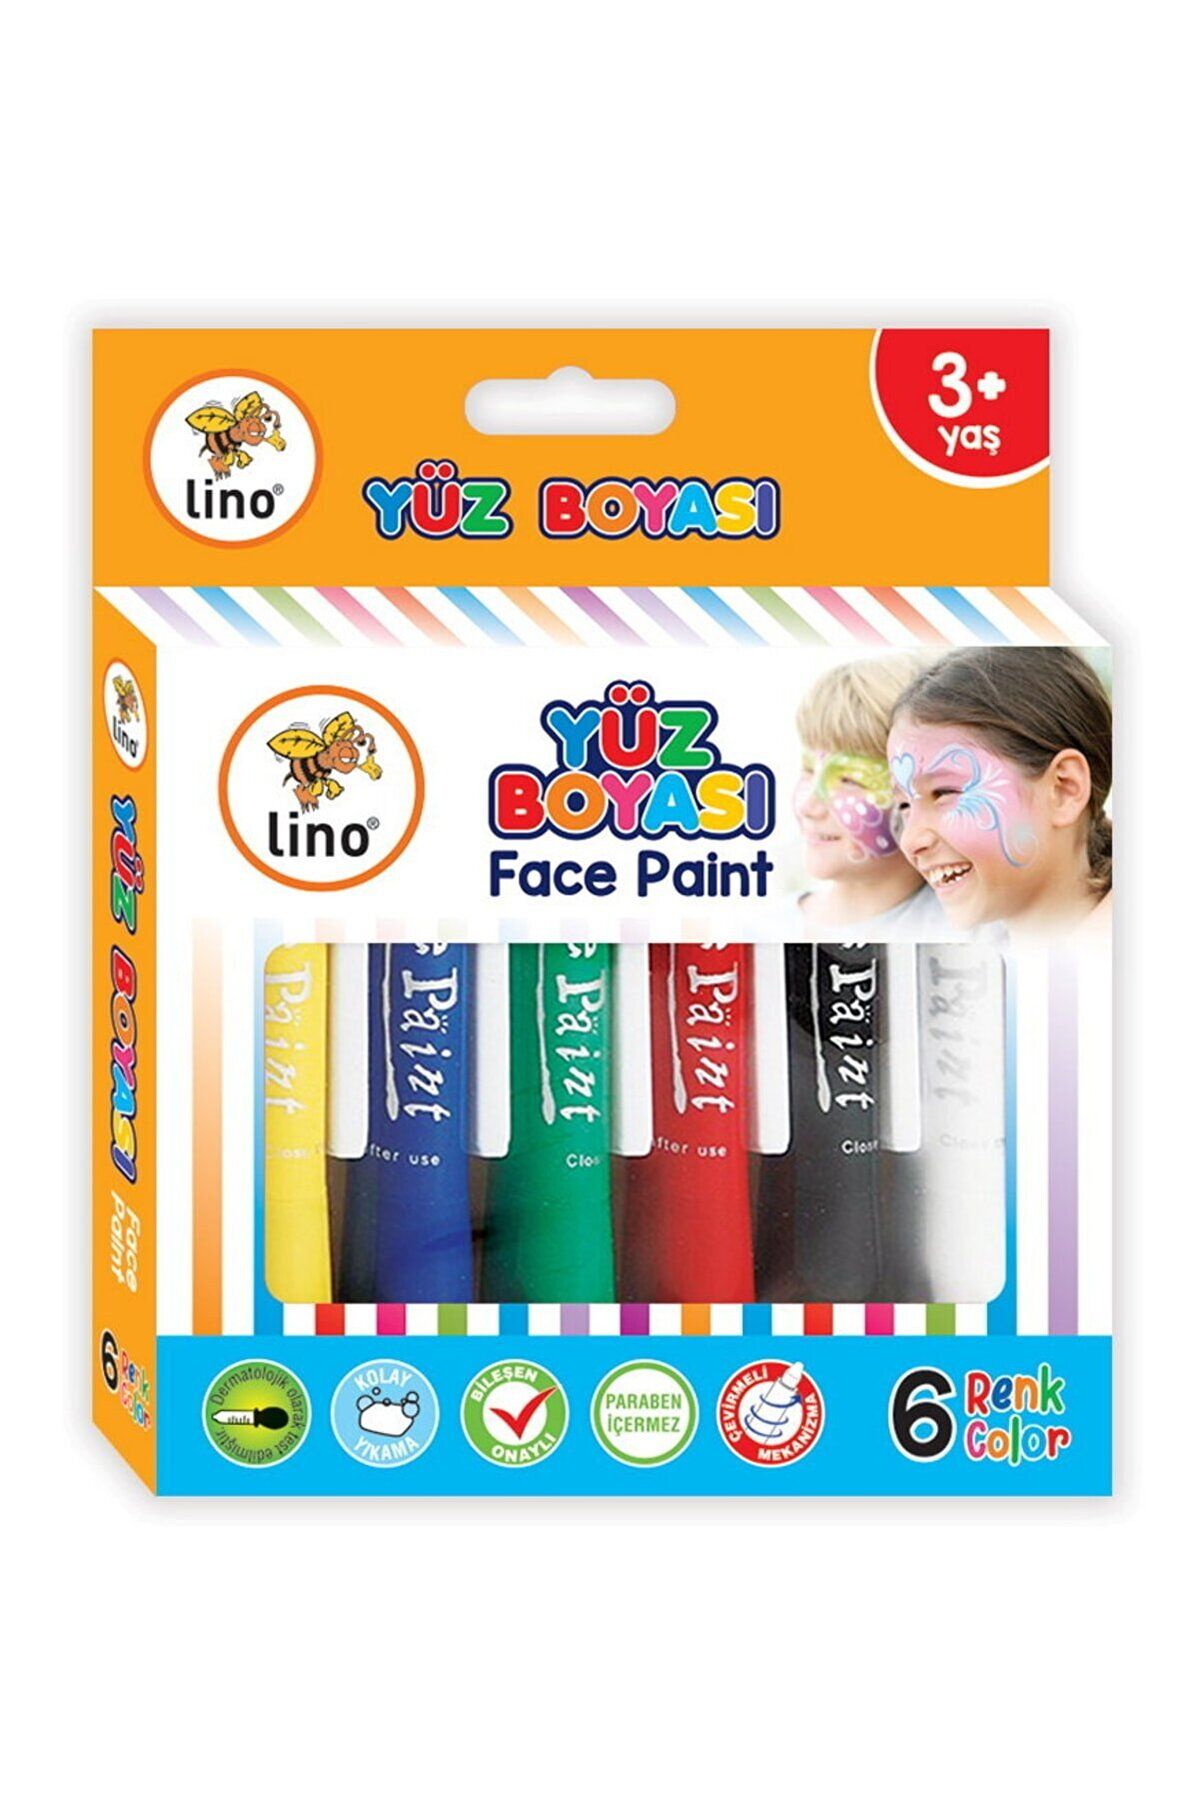 Lino Yüz Boyası 6 Renk Ln-901